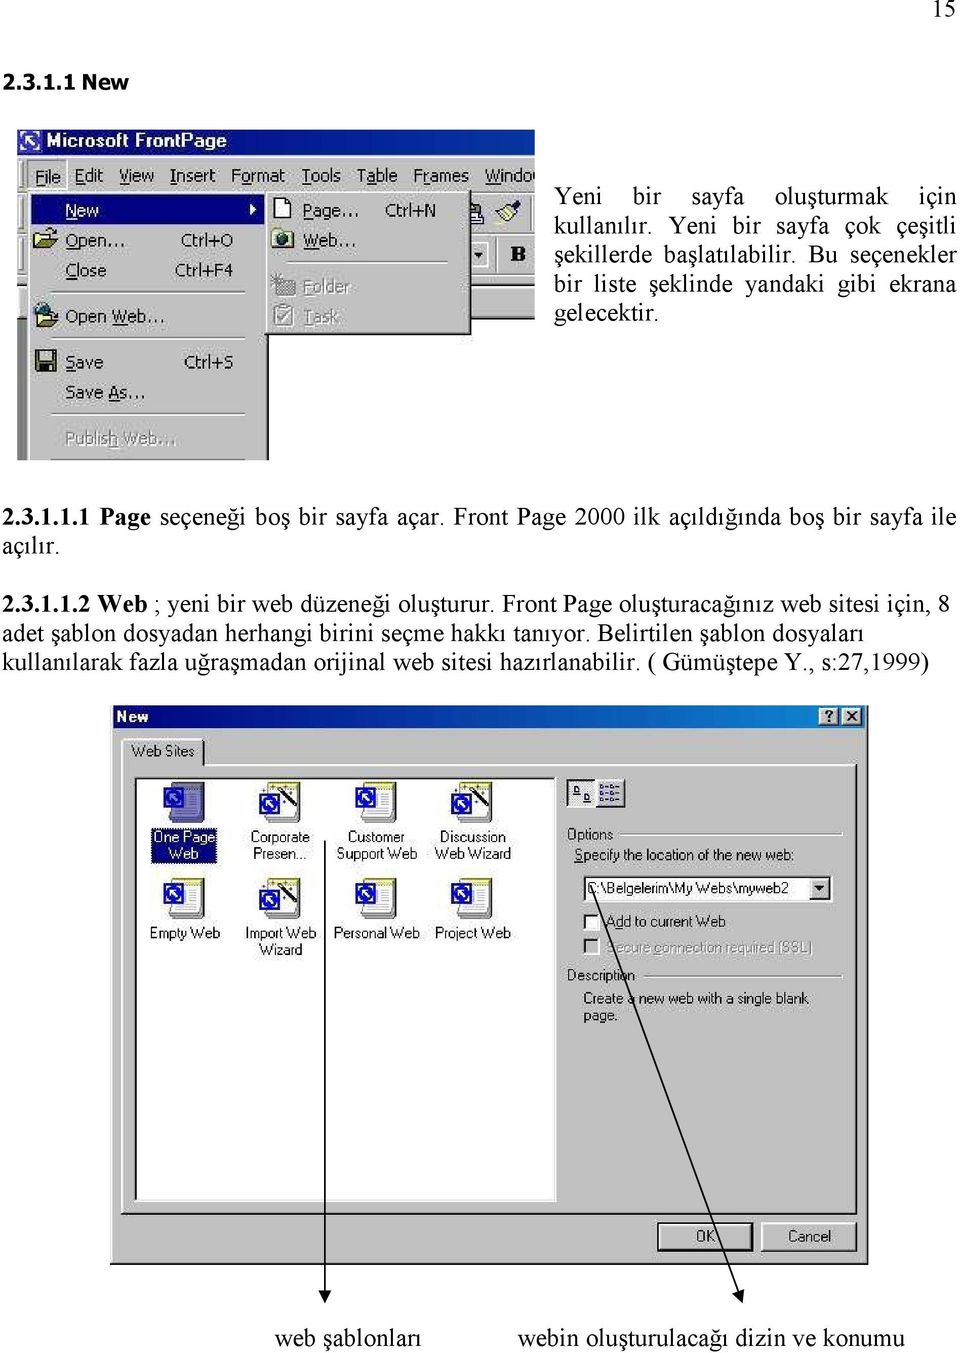 Front Page 2000 ilk açıldığında boş bir sayfa ile açılır. 2.3.1.1.2 Web ; yeni bir web düzeneği oluşturur.